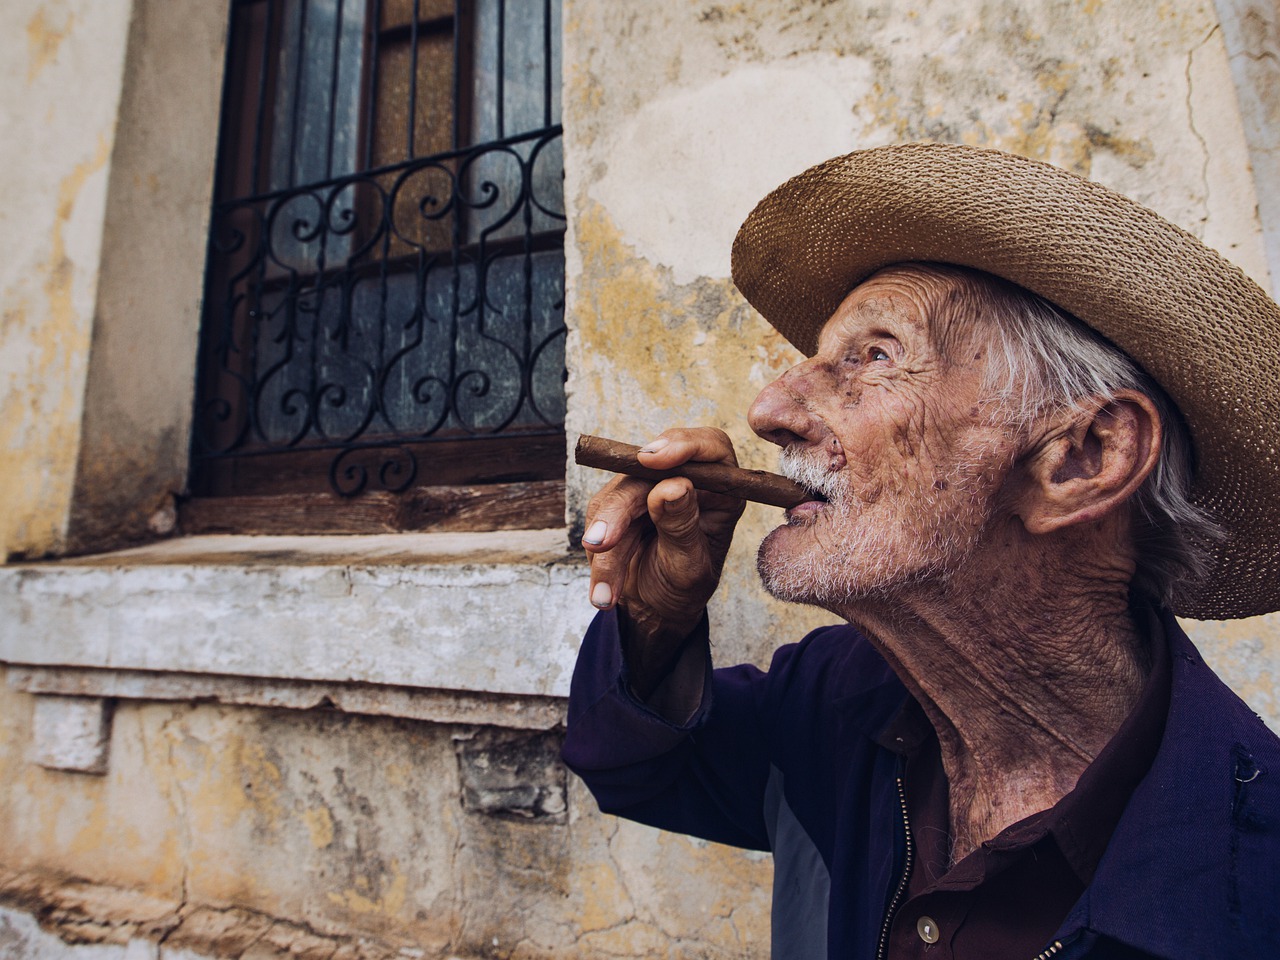 Das sind die Top 5 der kubanischen Zigarren - Blog